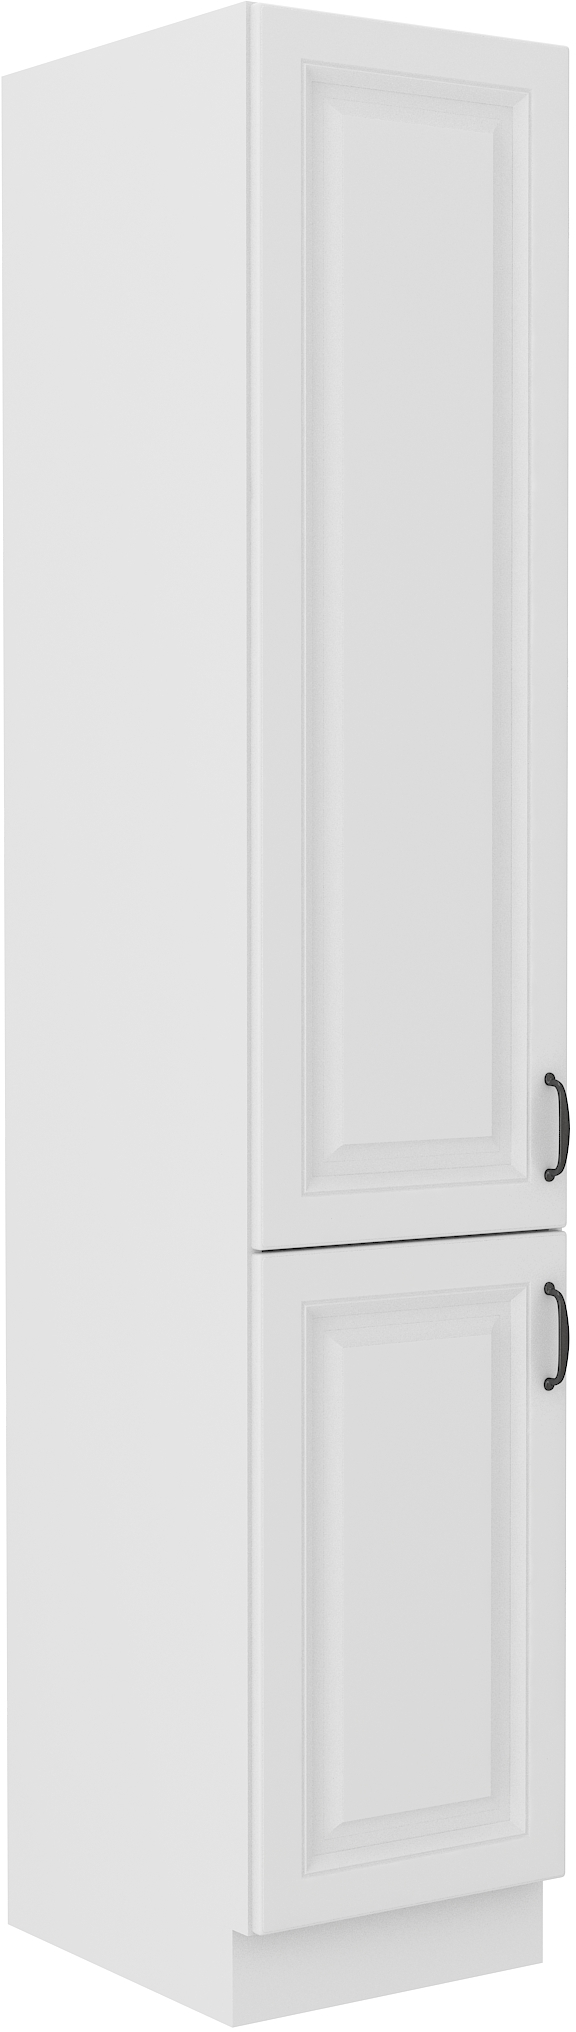 Vysoká potravinová skříňka Stilo 40 DK-210 2F Barva korpusu: Bílá, Barva dvířek: Bílá - Bílá,Bílá,bí